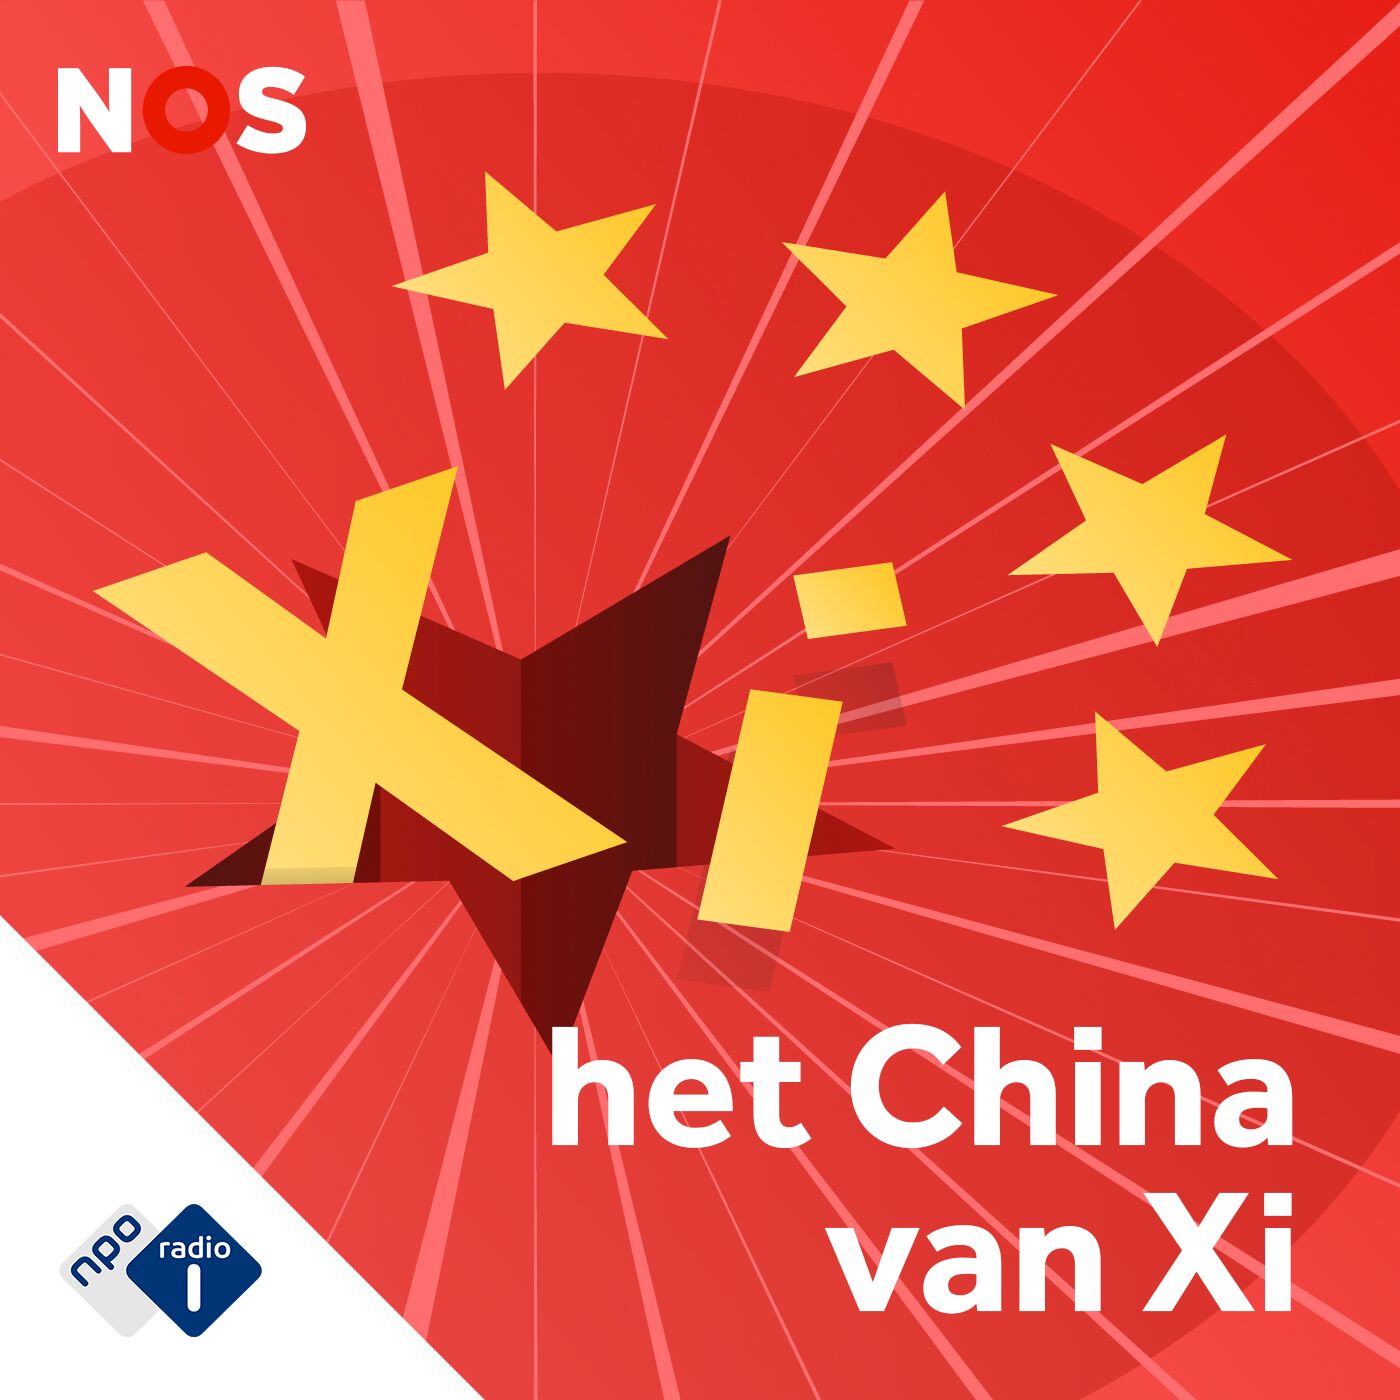 Het China van Xi logo